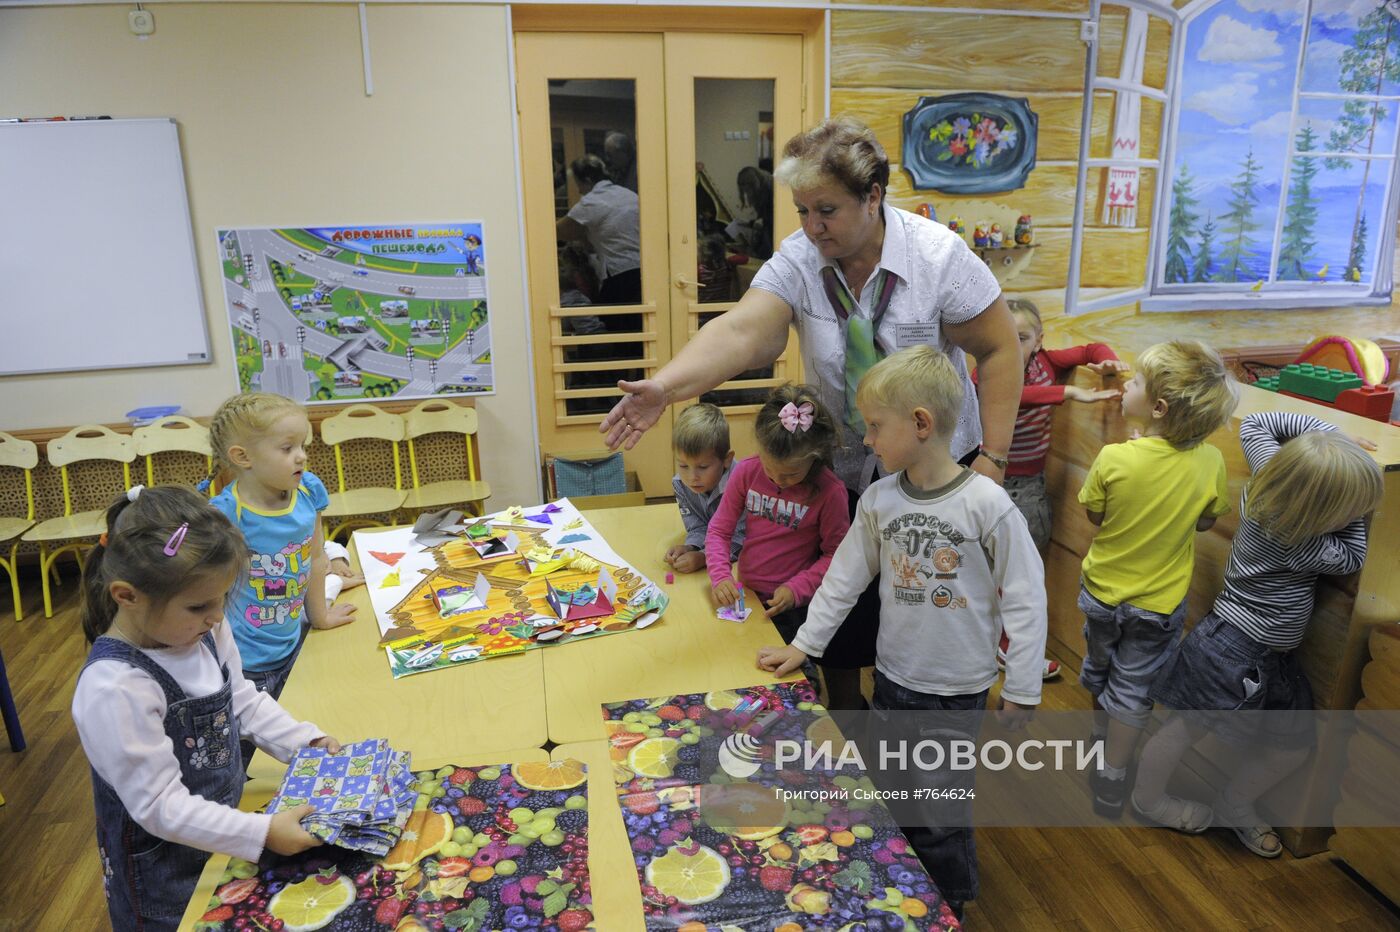 ГОУ "Центр развития ребенка - детский сад № 2336